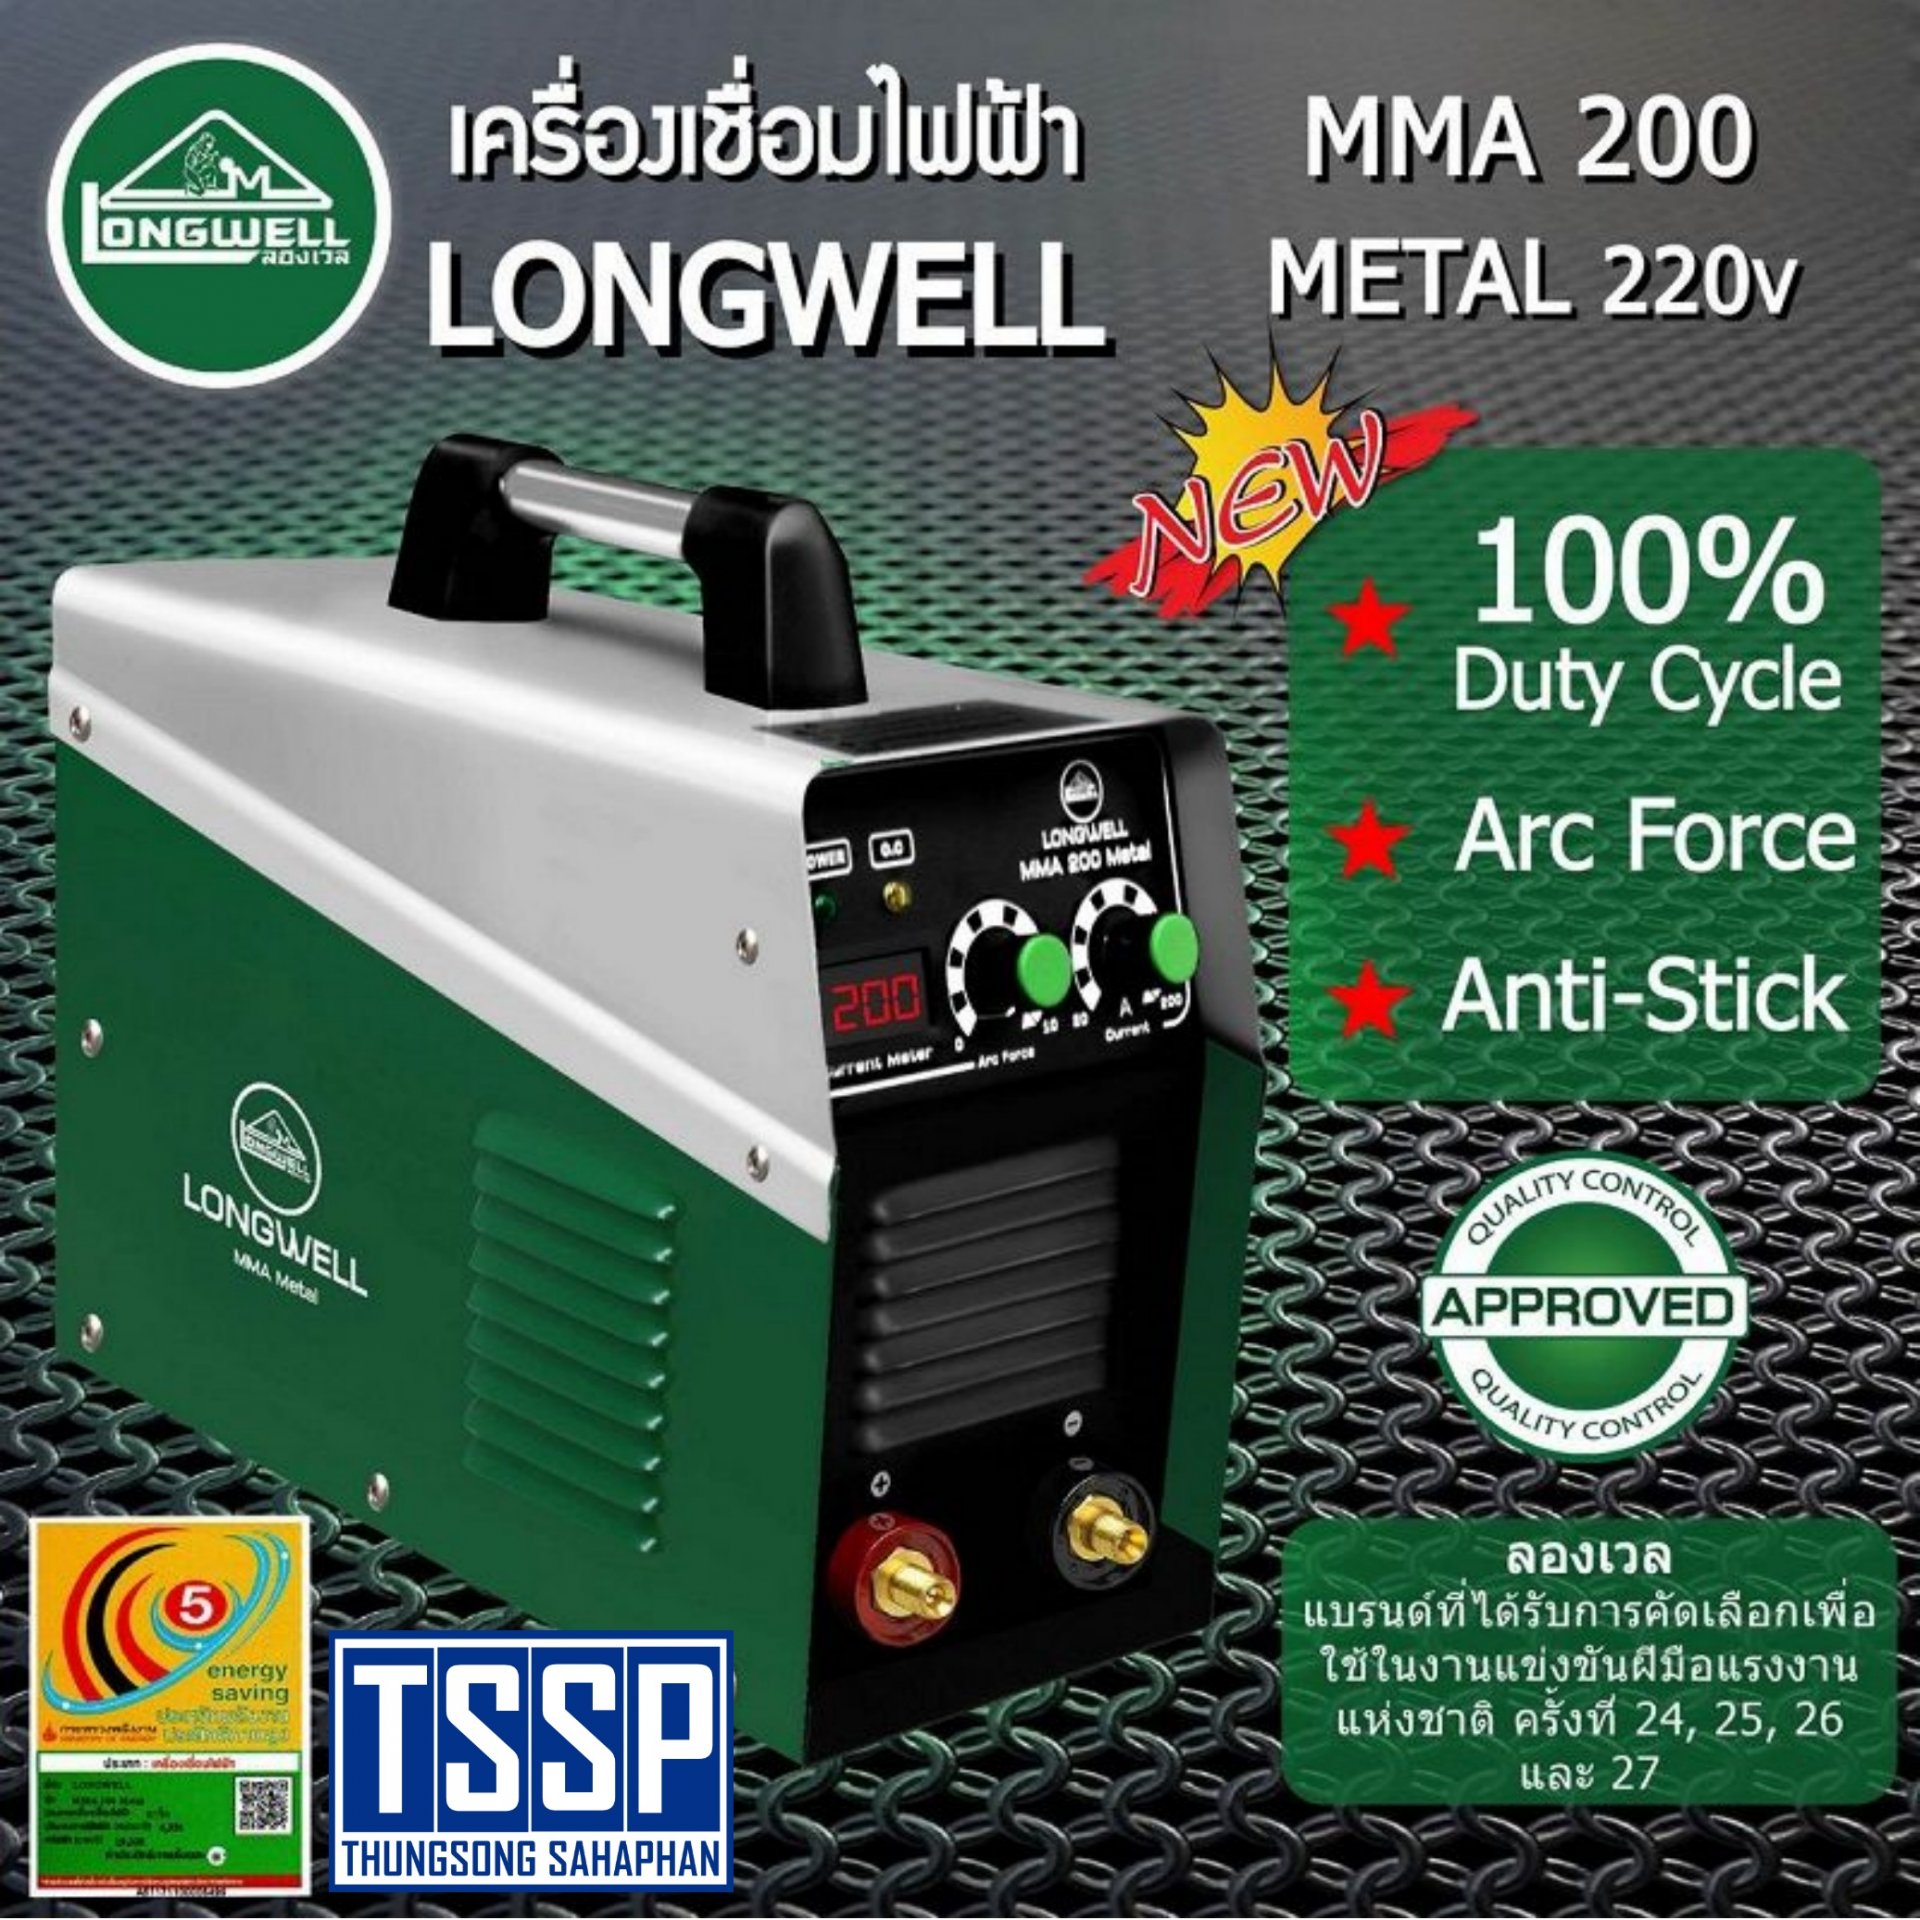 เครื่องเชื่อมไฟฟ้า MMA 200 (Metal) ระบบอินเวอร์เตอร์ LONGWELL